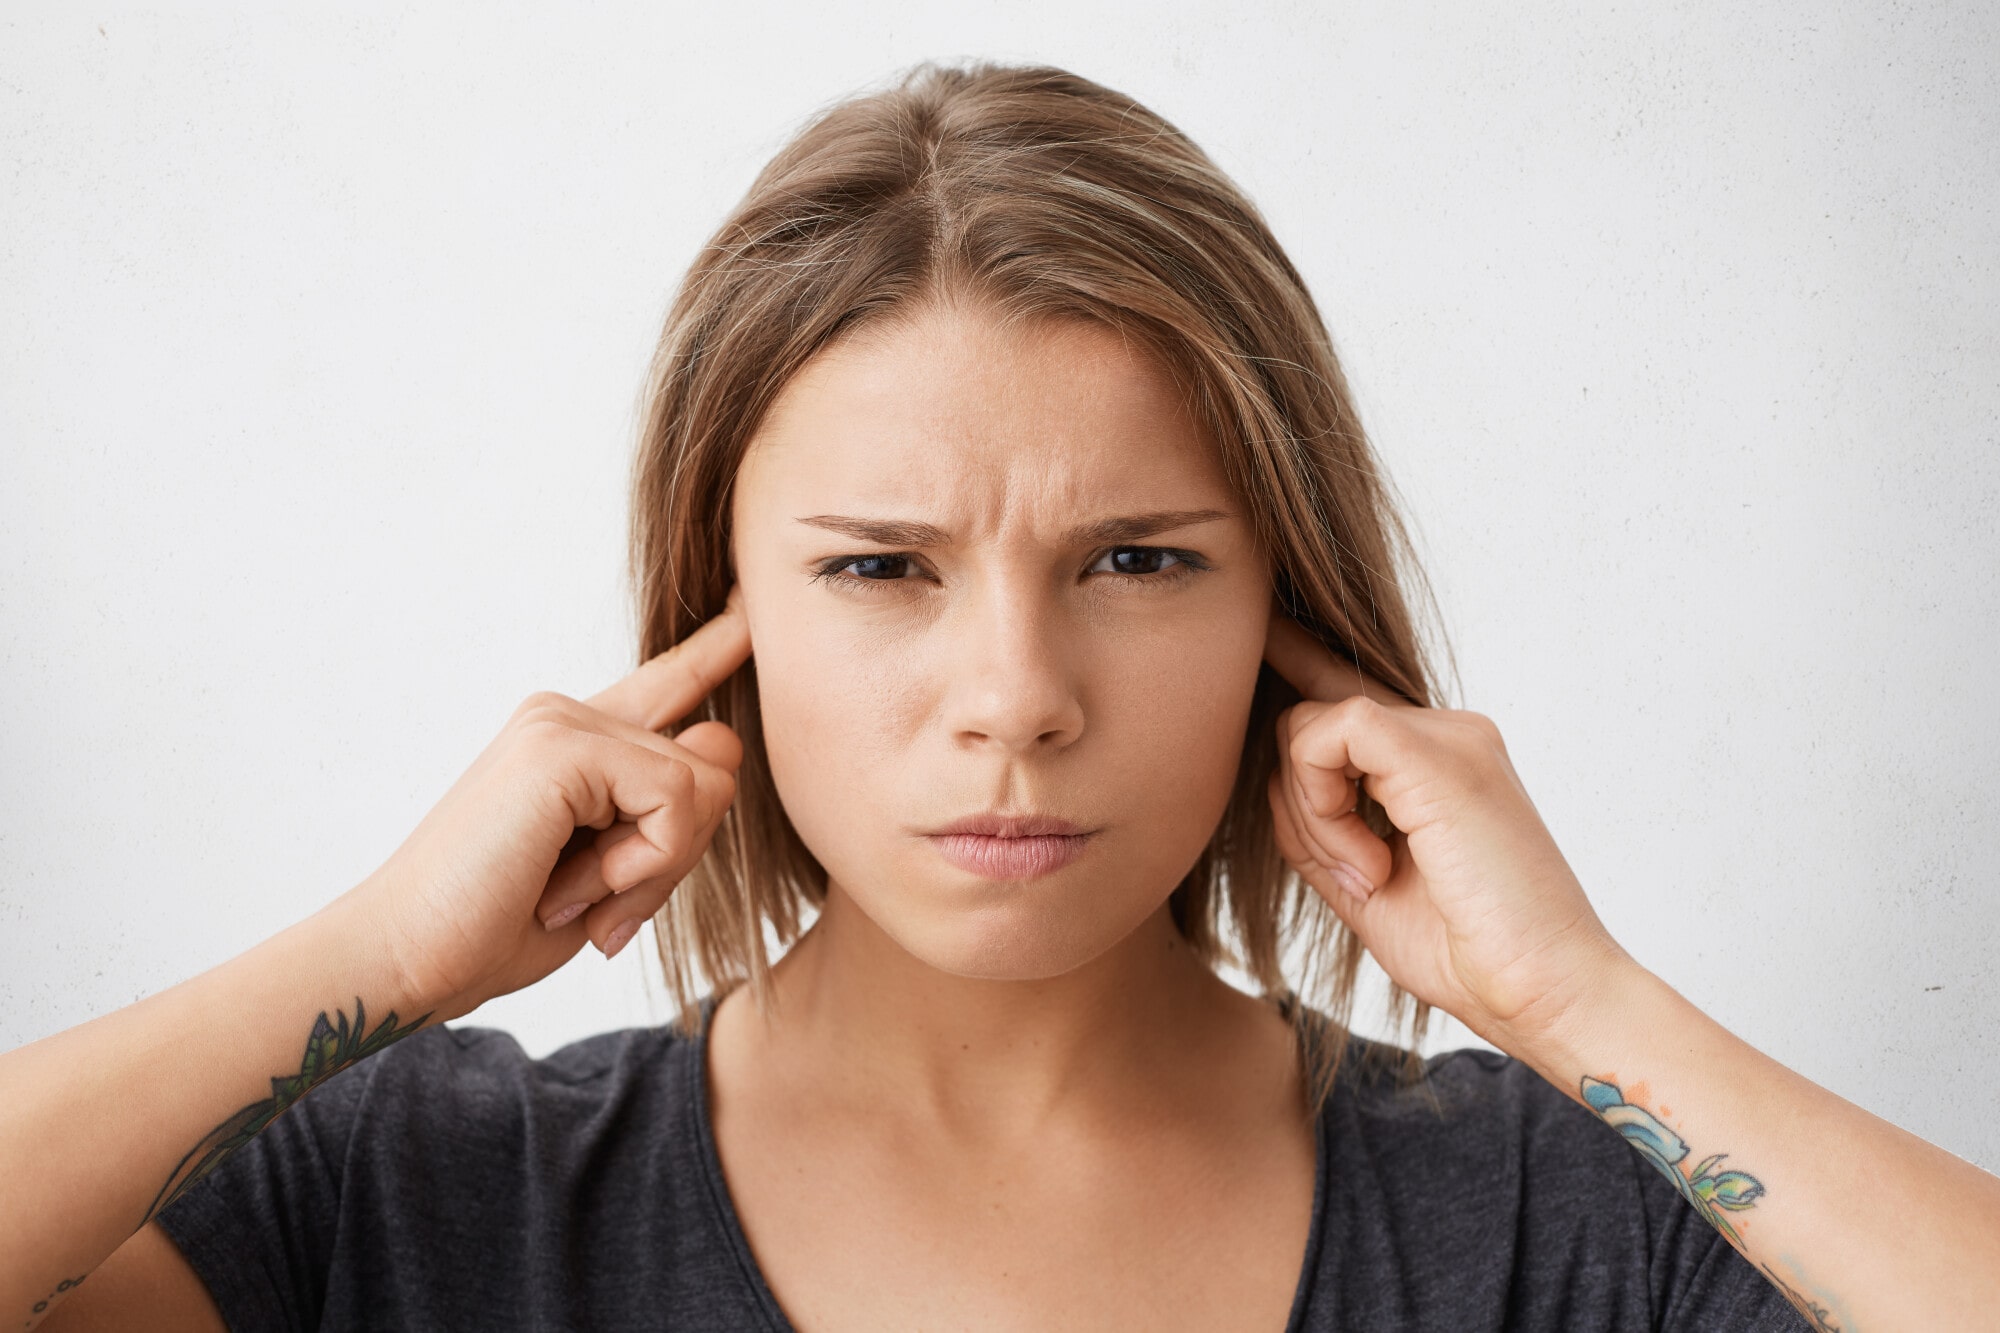 How Should a Landlord Handle Noise Complaints?